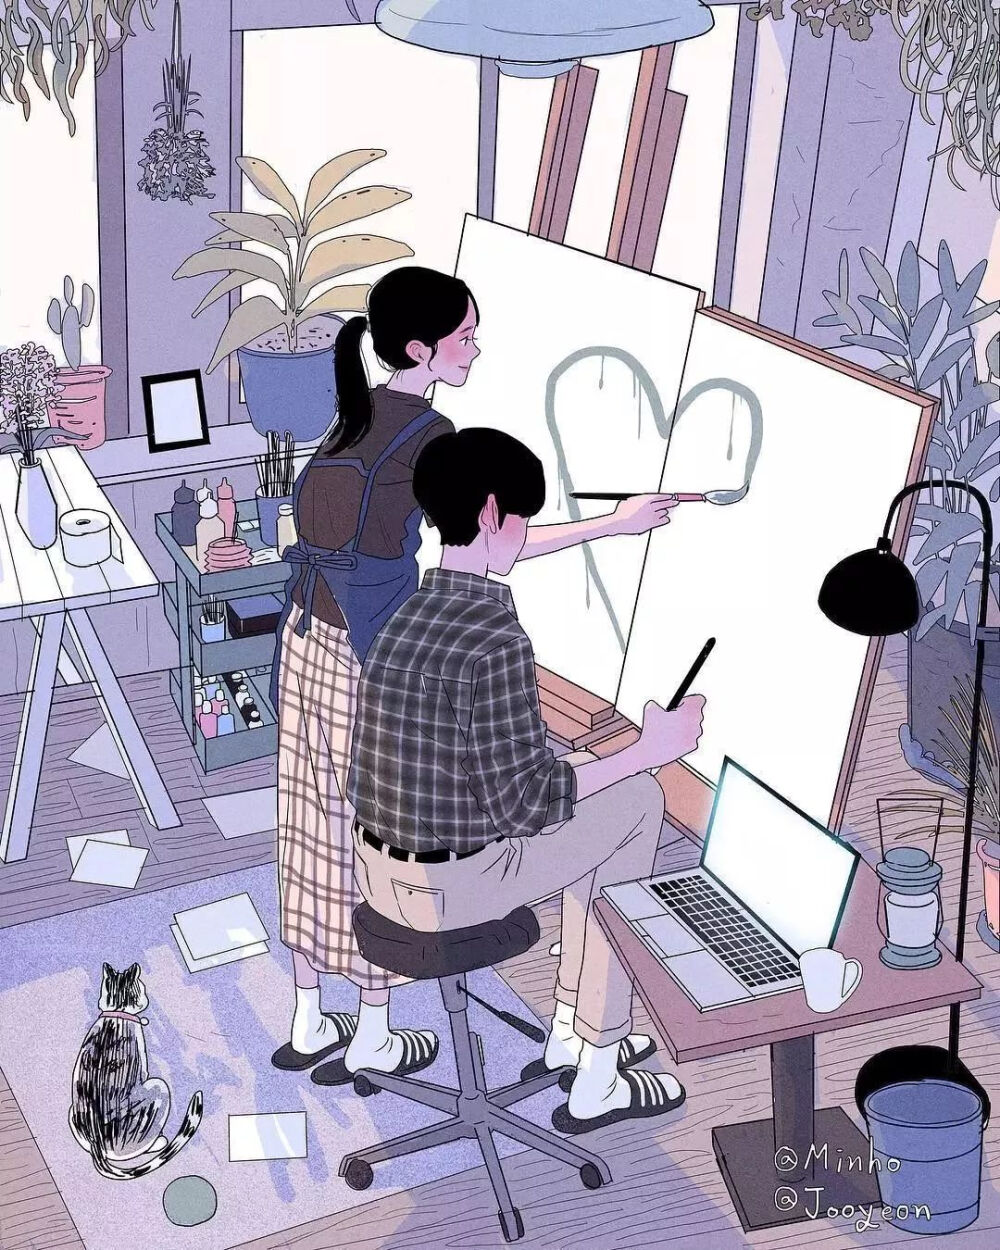 韩国插画师myeong minho 将二人世界绘于纸上,我想最暖的爱情莫过于此